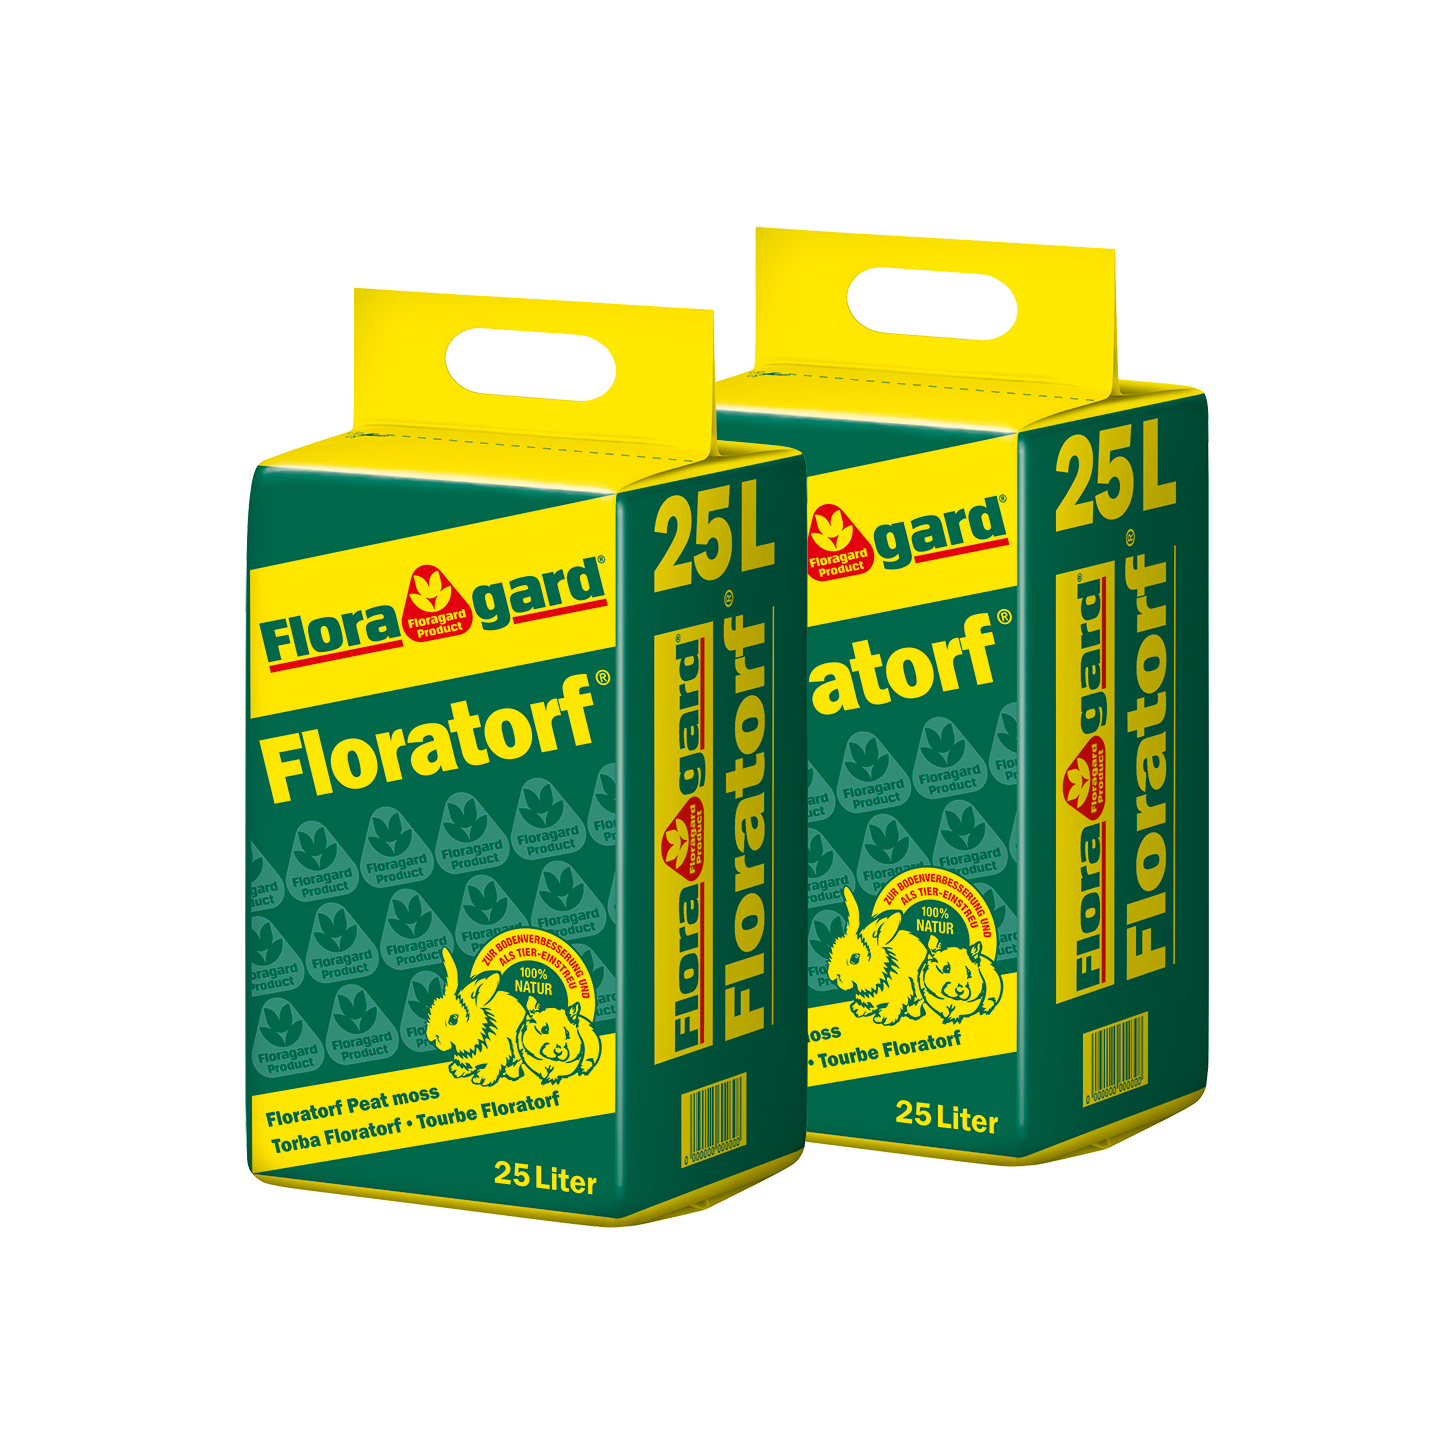 Floragard Floratorf boy 2x25L